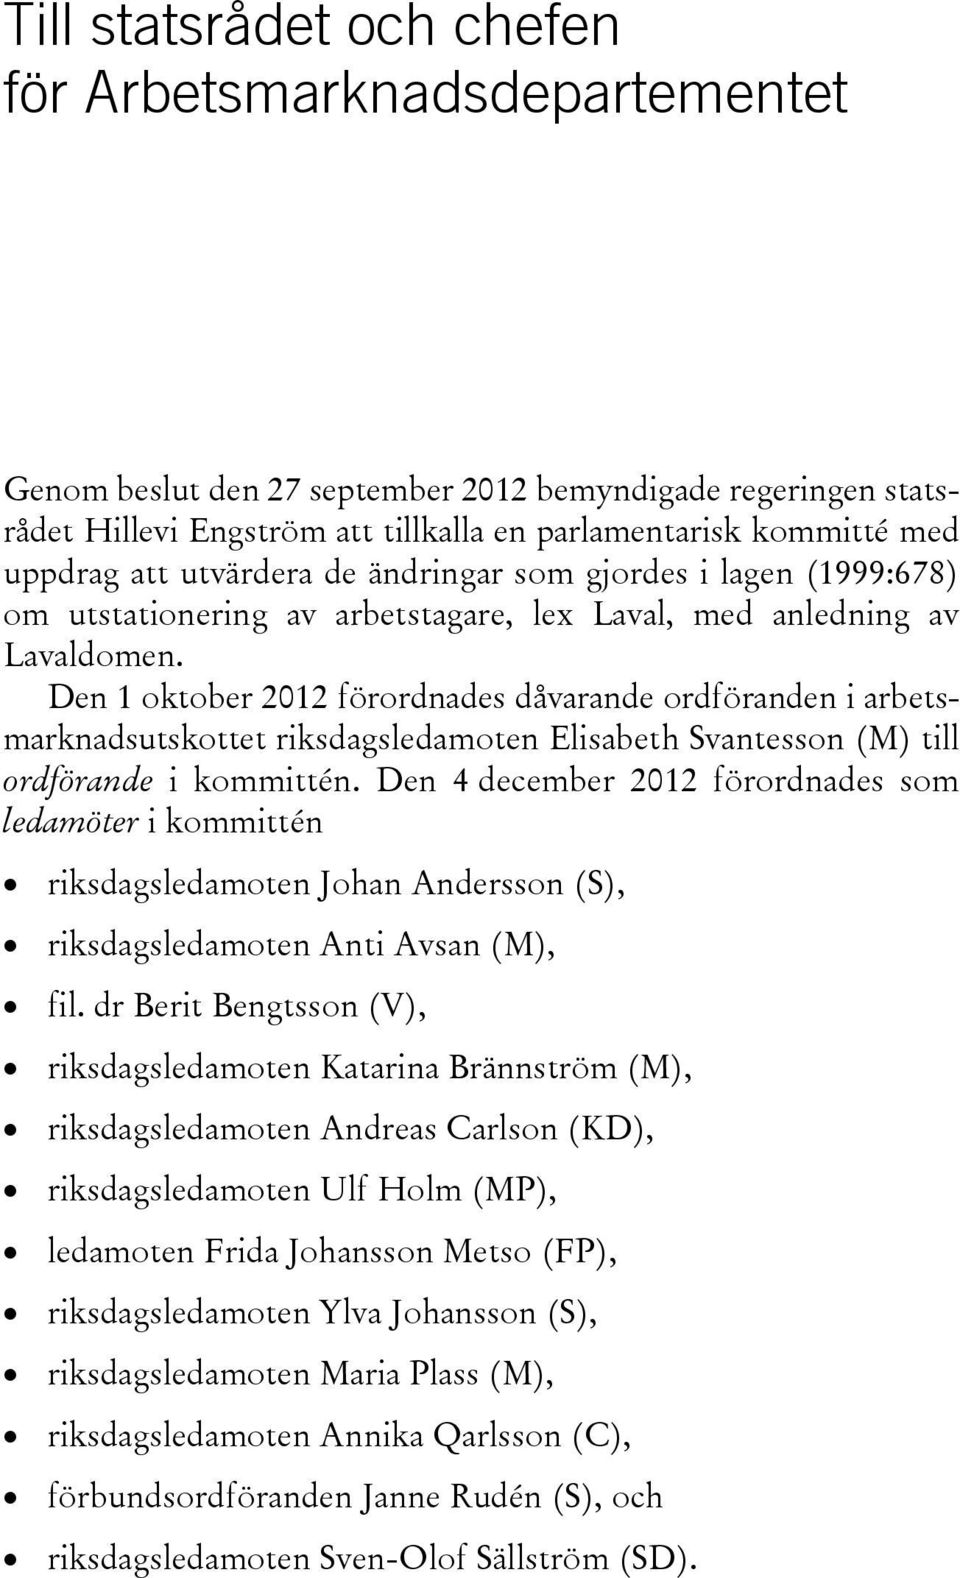 Den 1 oktober 2012 förordnades dåvarande ordföranden i arbetsmarknadsutskottet riksdagsledamoten Elisabeth Svantesson (M) till ordförande i kommittén.